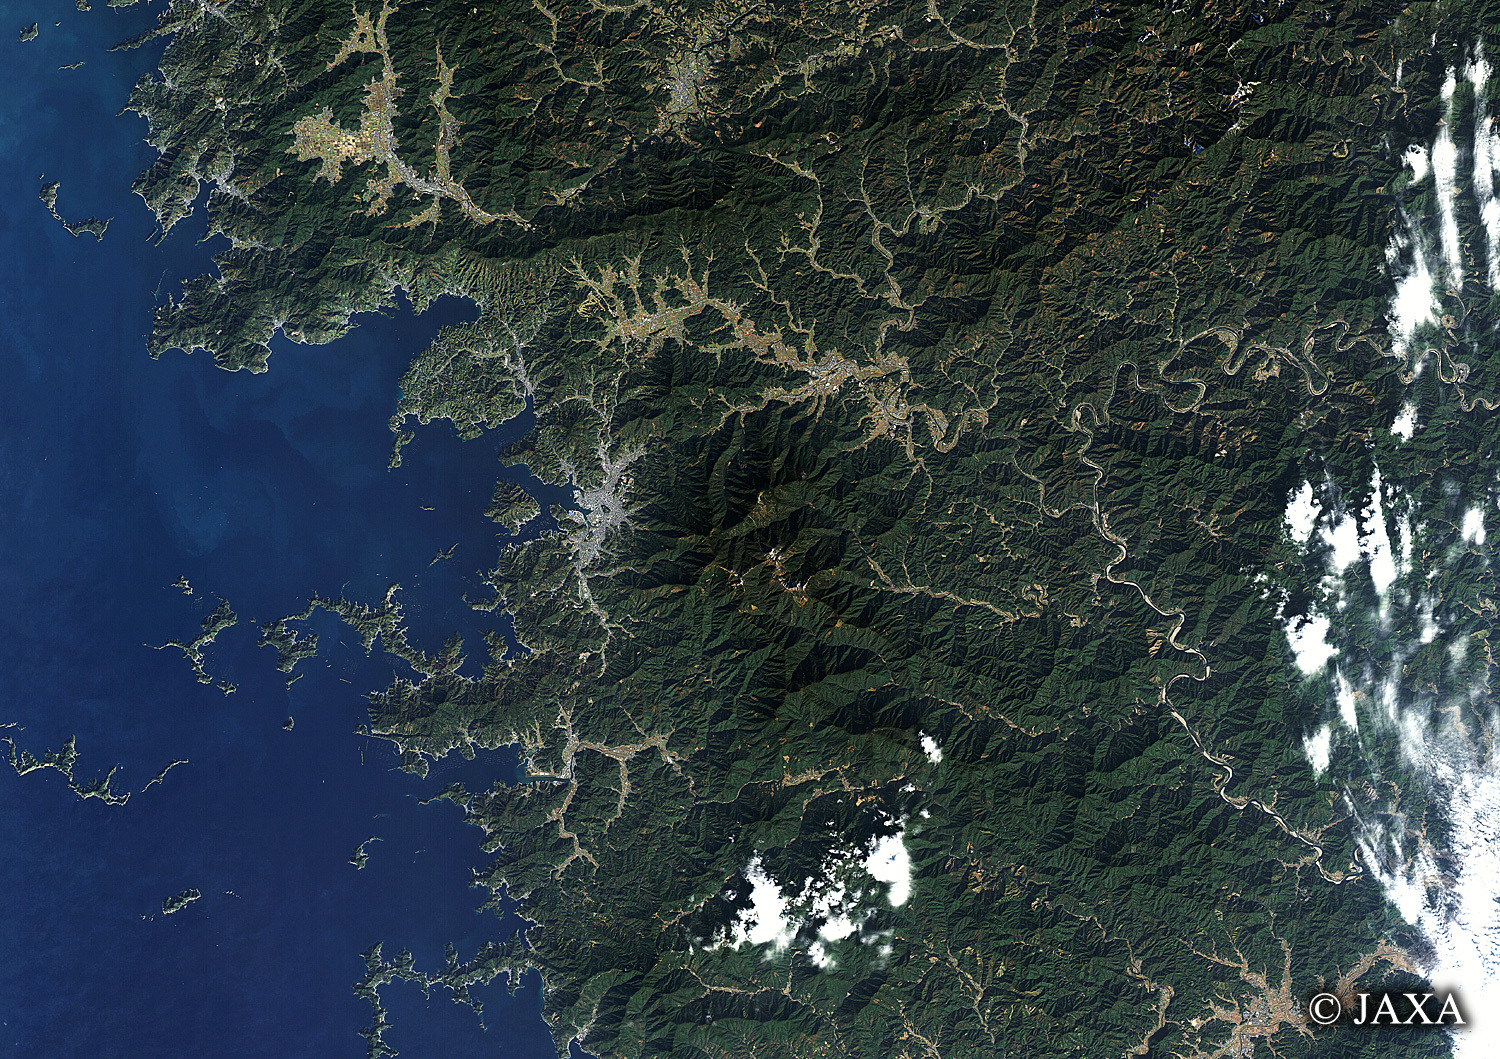 だいちから見た日本の都市 宇和海:衛星画像